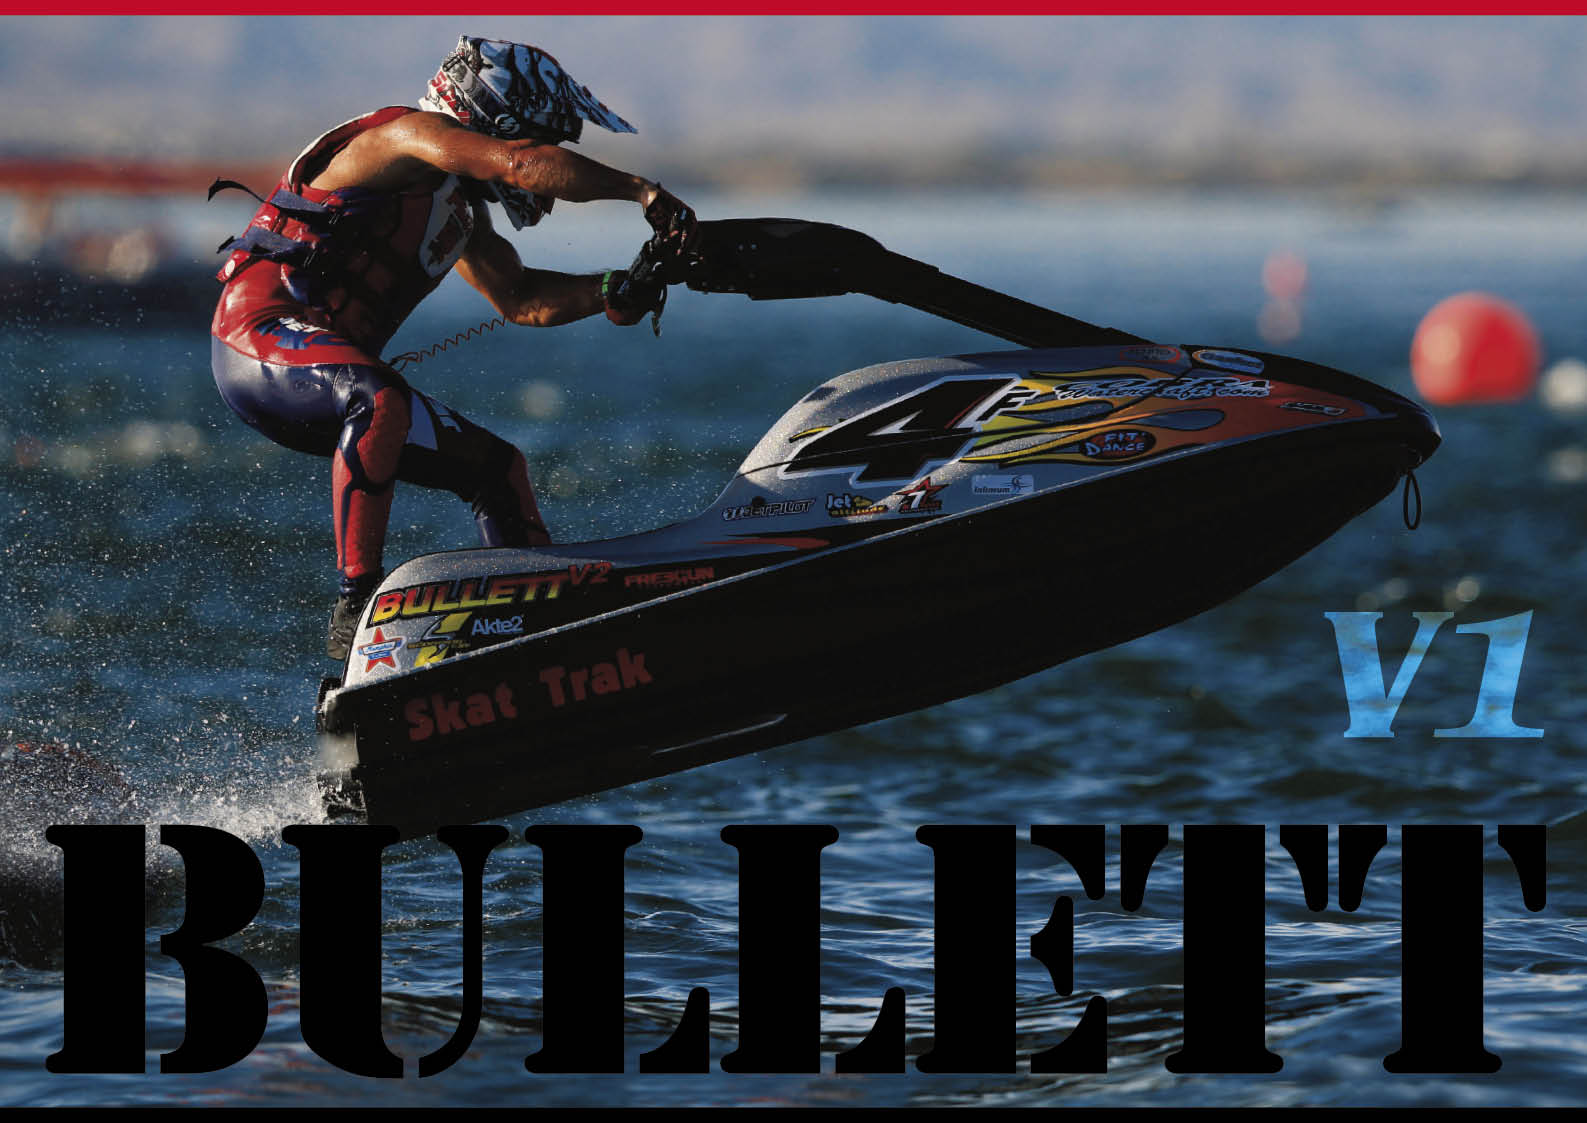 世界的 メジャー レースマシンブランド「ブレットレーシング」BULLETT Racingとは　ジェットスキー（水上バイク）